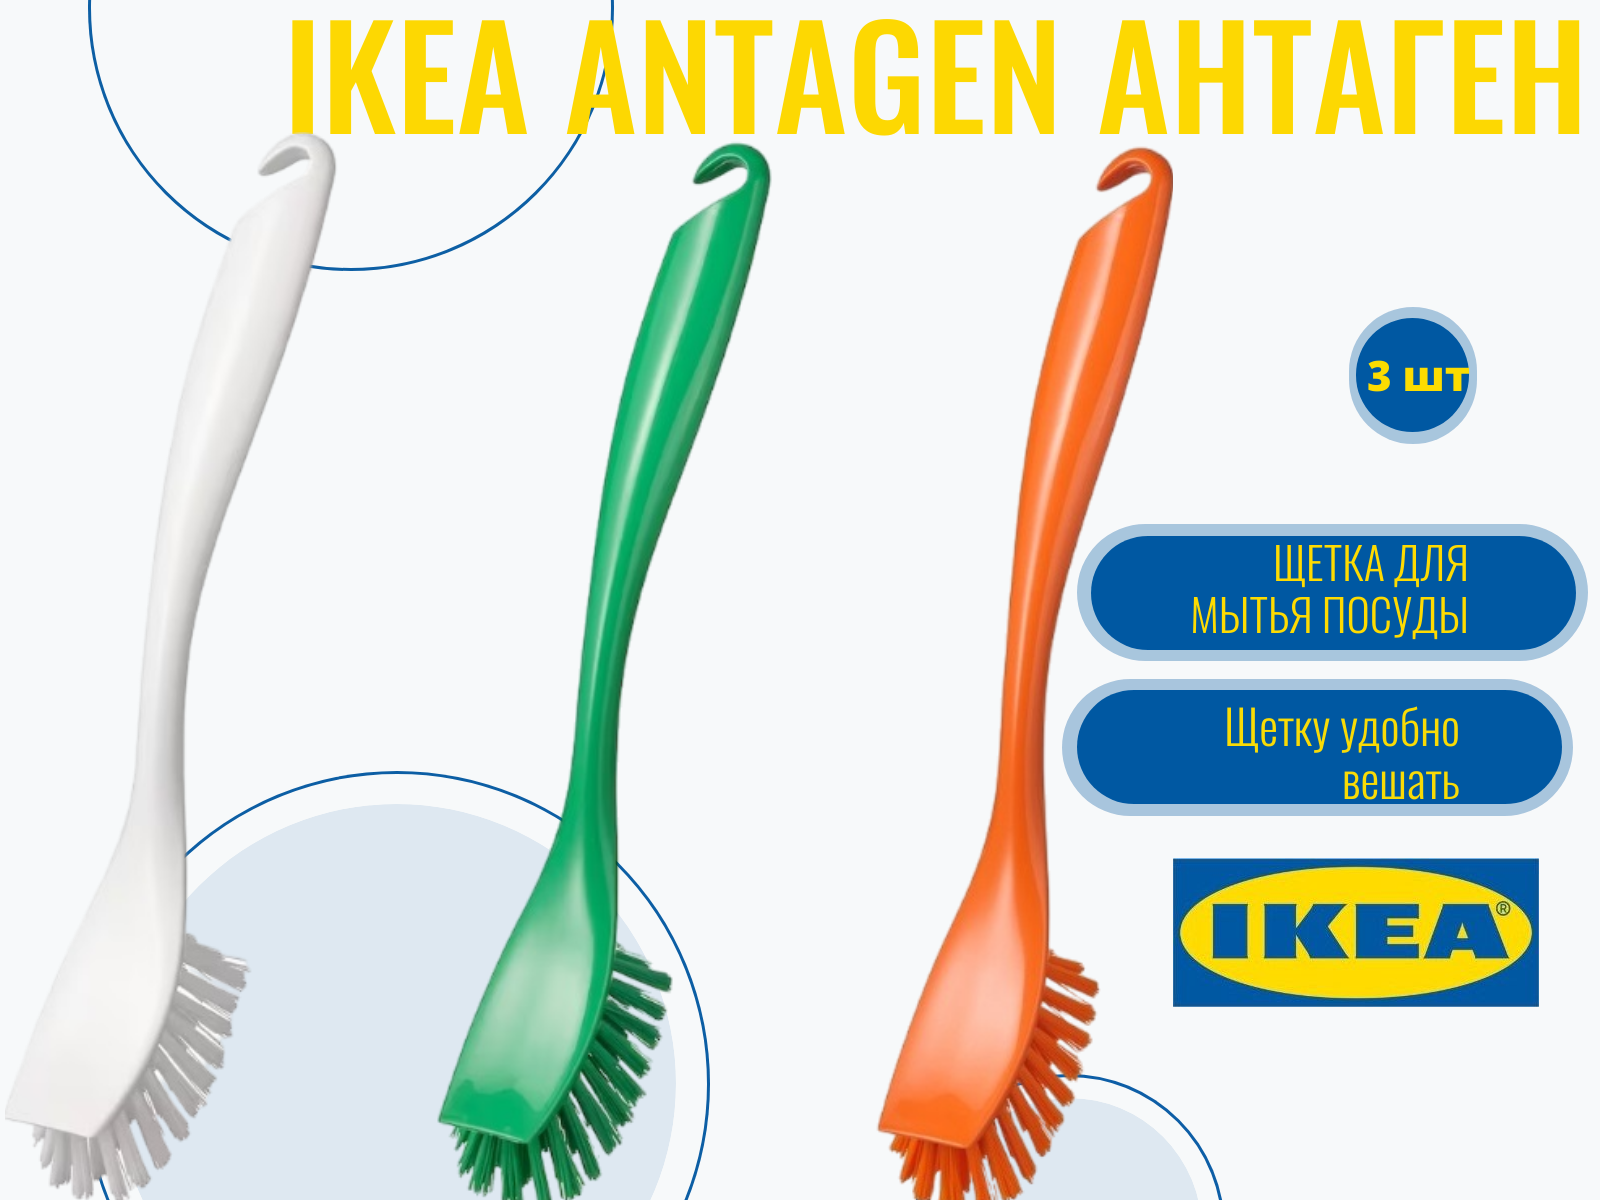 Щетка для мытья посуды, 3 шт. разные цвета, IKEA ANTAGEN антаген